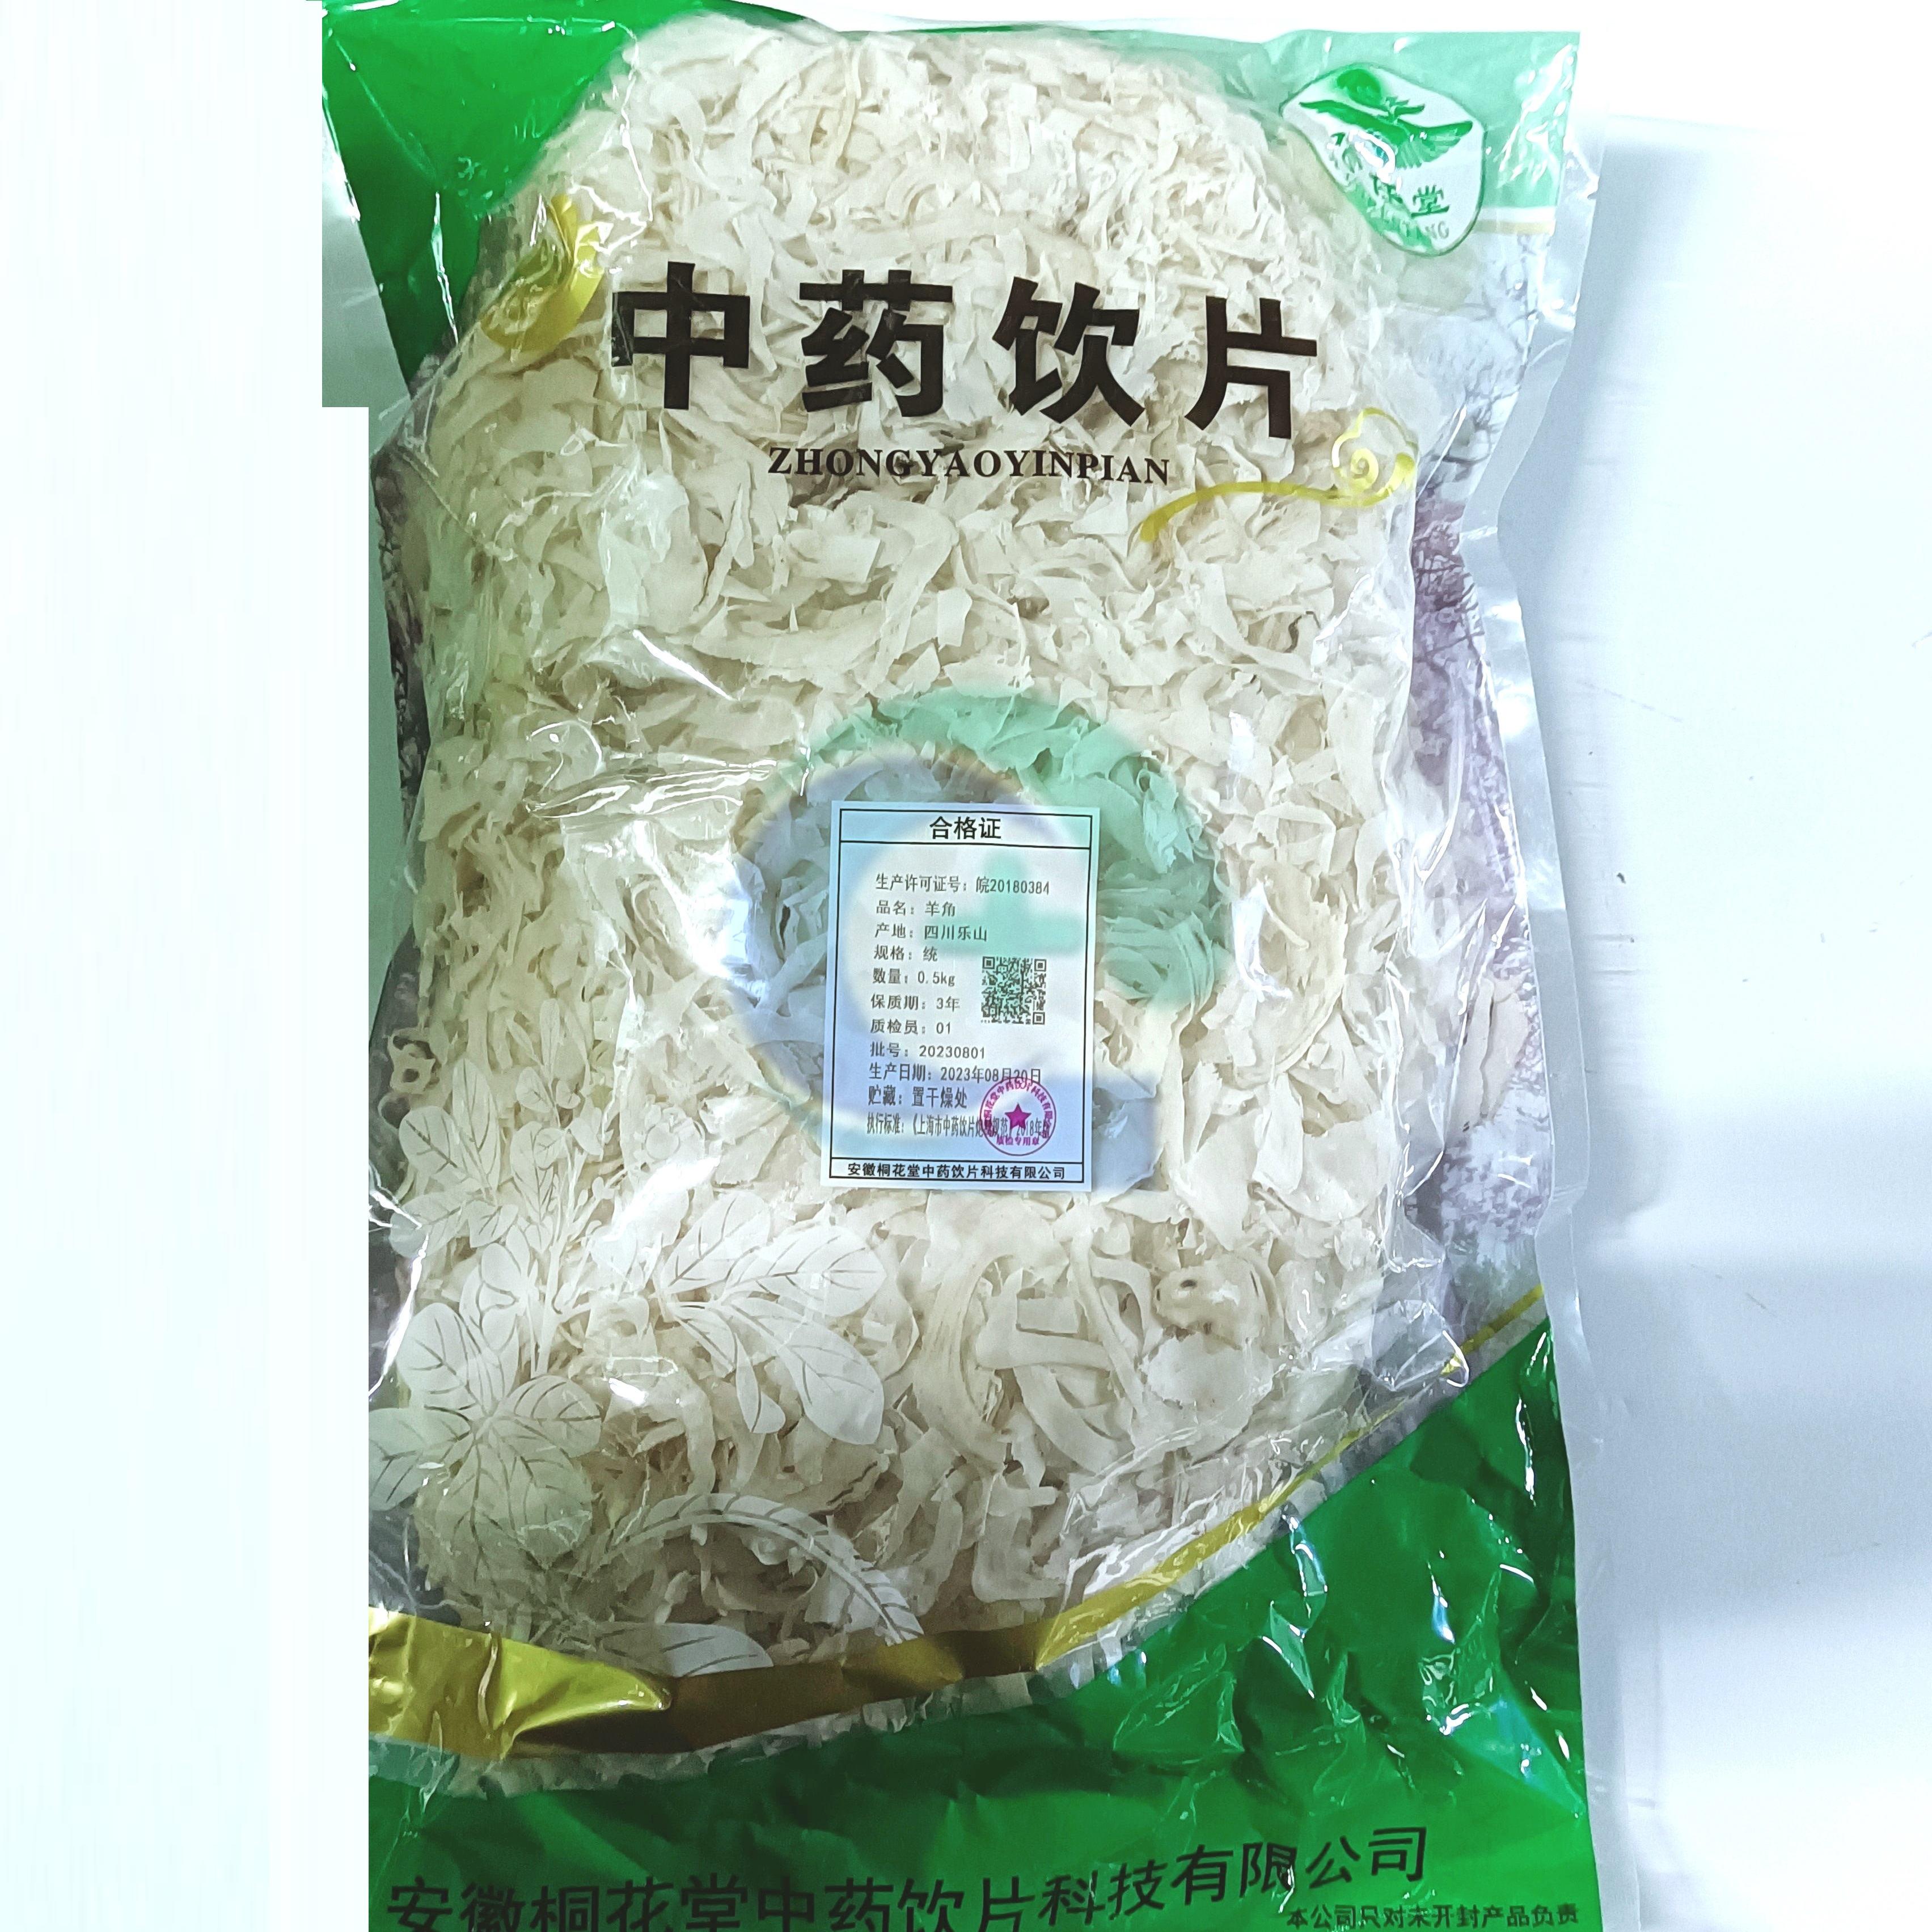 【】羊角-统-0.5kg/袋-安徽桐花堂中药饮片科技有限公司